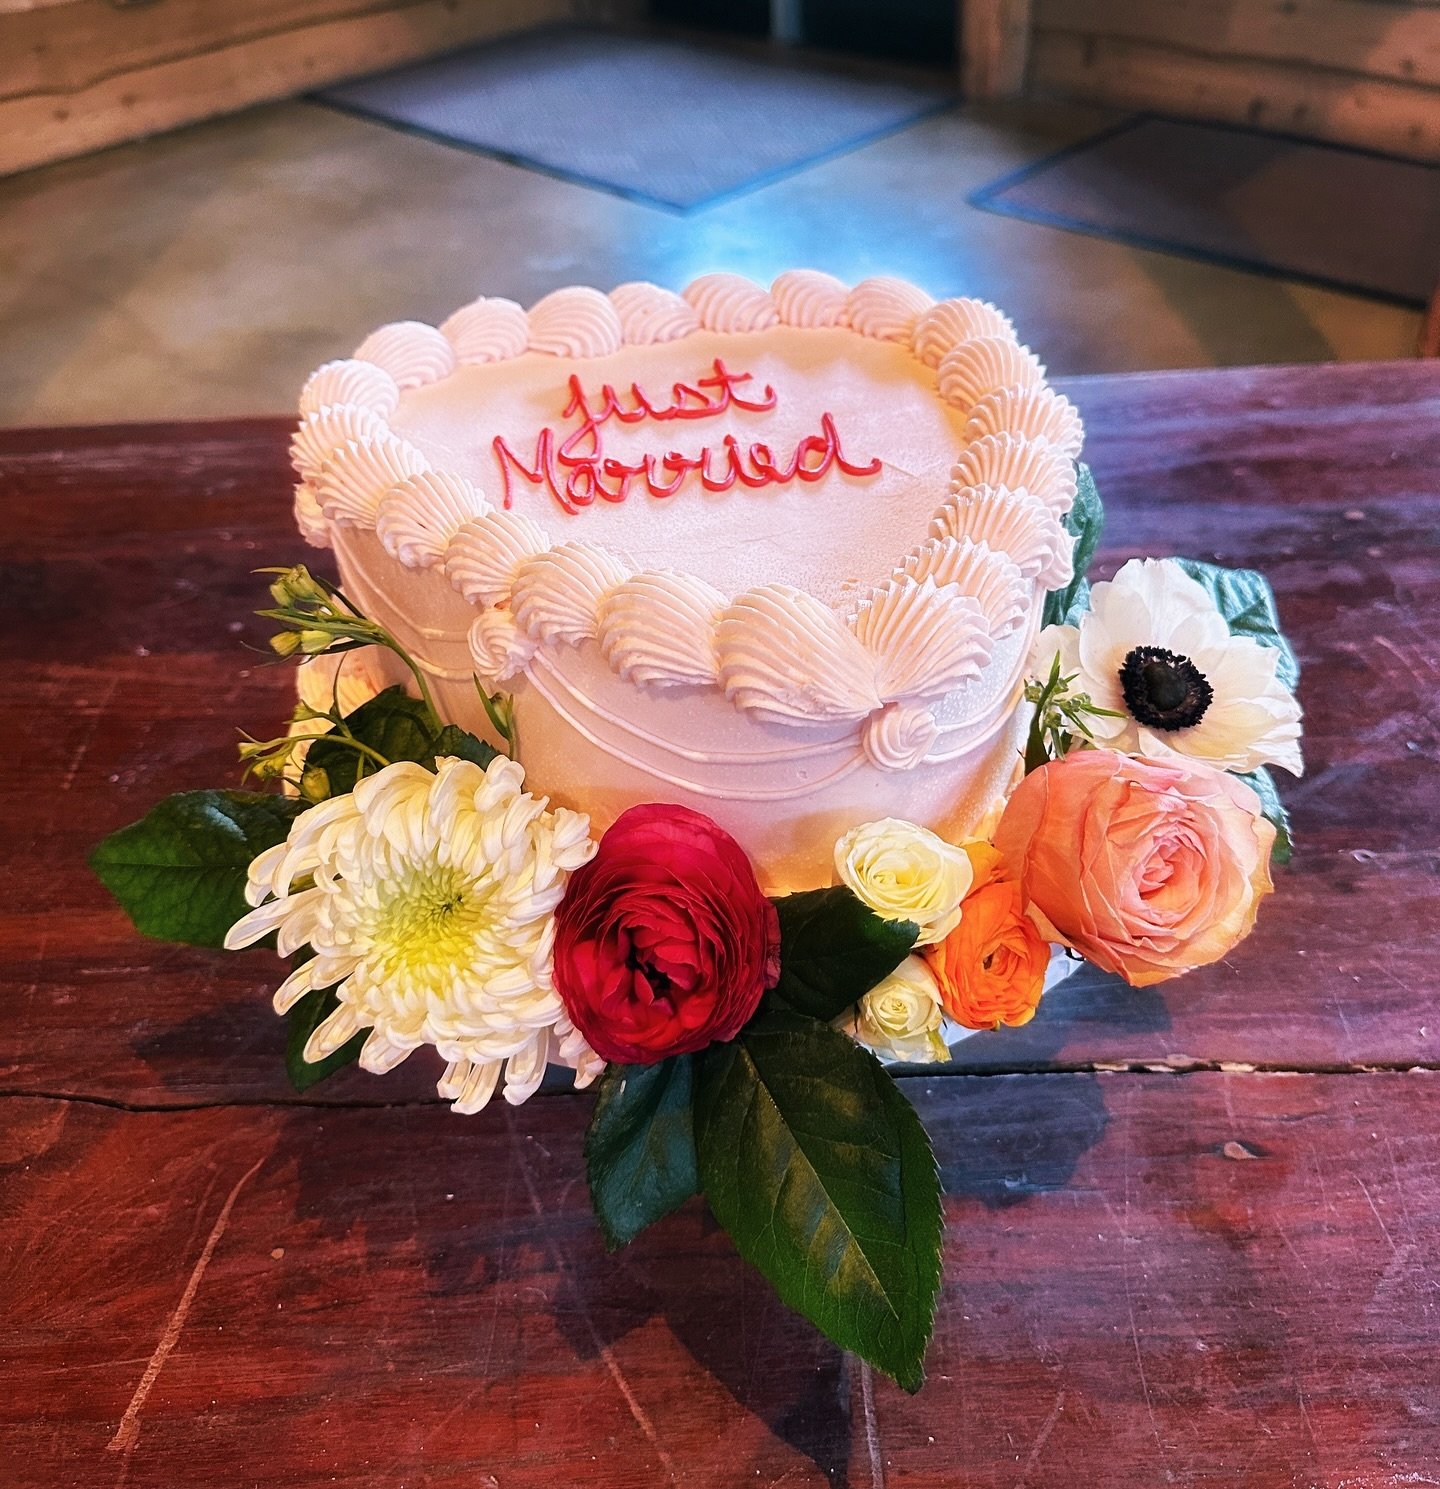 A pastel pink vintage wedding cake with fresh florals! 🩷🤍
&bull;
&bull;
&bull;
&bull;
&bull;
#cake #cakedecorating #cakedesign #cakeoftheday #cakedecorator #wedding #weddingvenue #weddingcake #cakestyle #cakecakecake #weddinginspiration #weddingide